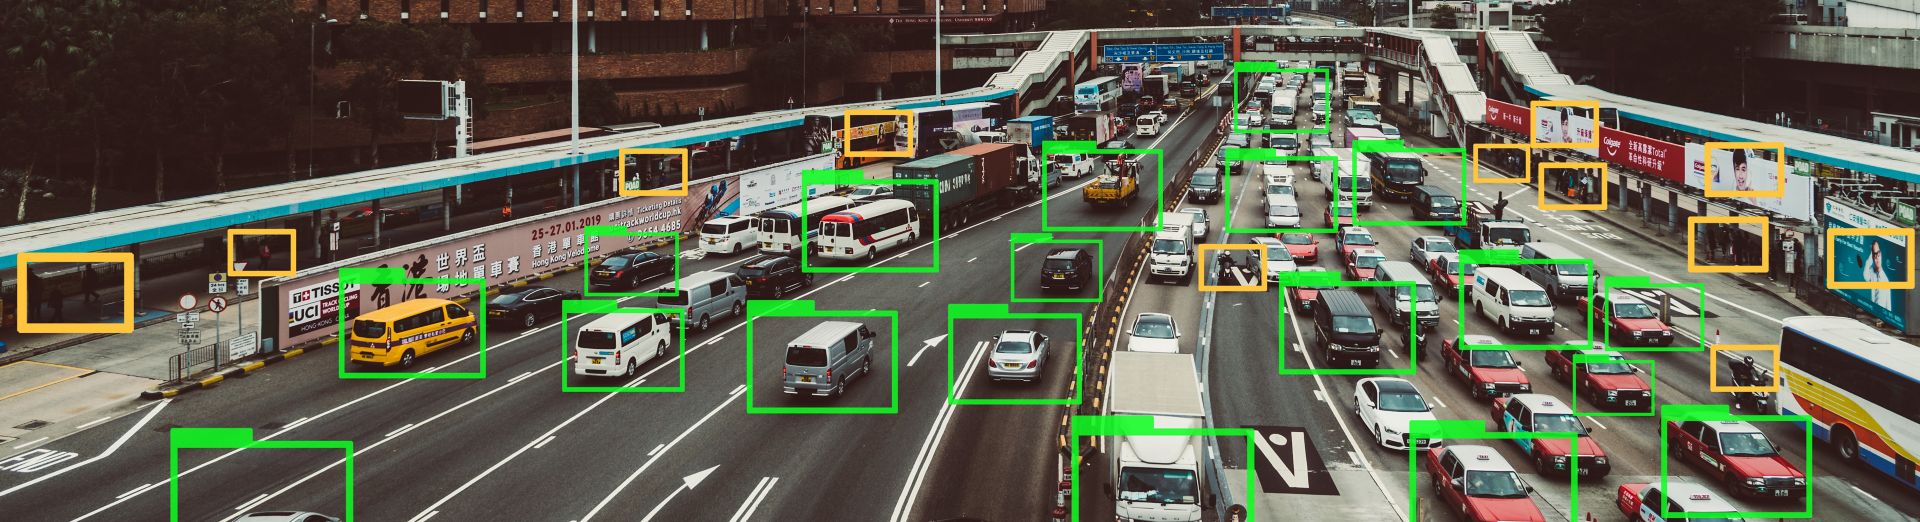 Sporing av biler på en motorvei ved hjelp av maskinlæringsteknologi